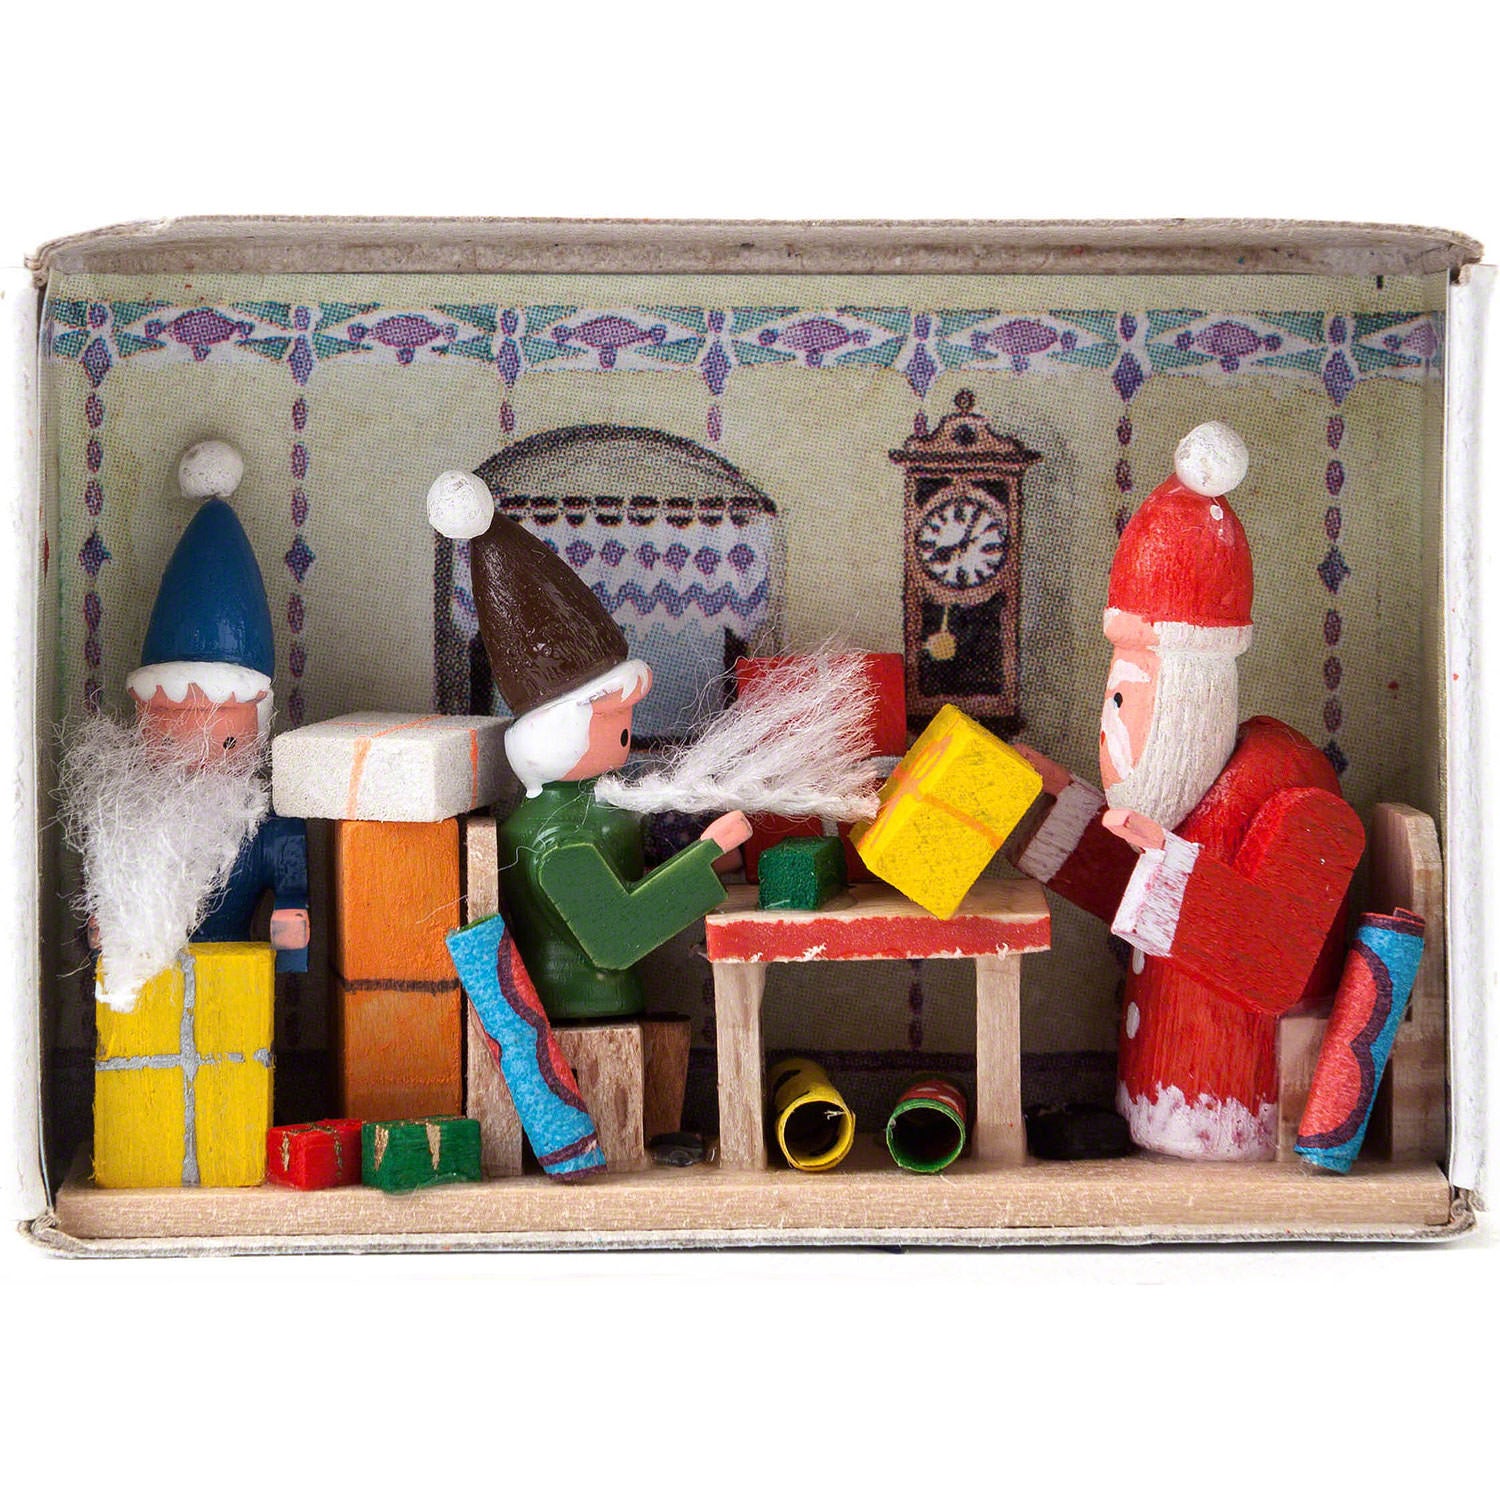 Miniature Christmas Matchbox